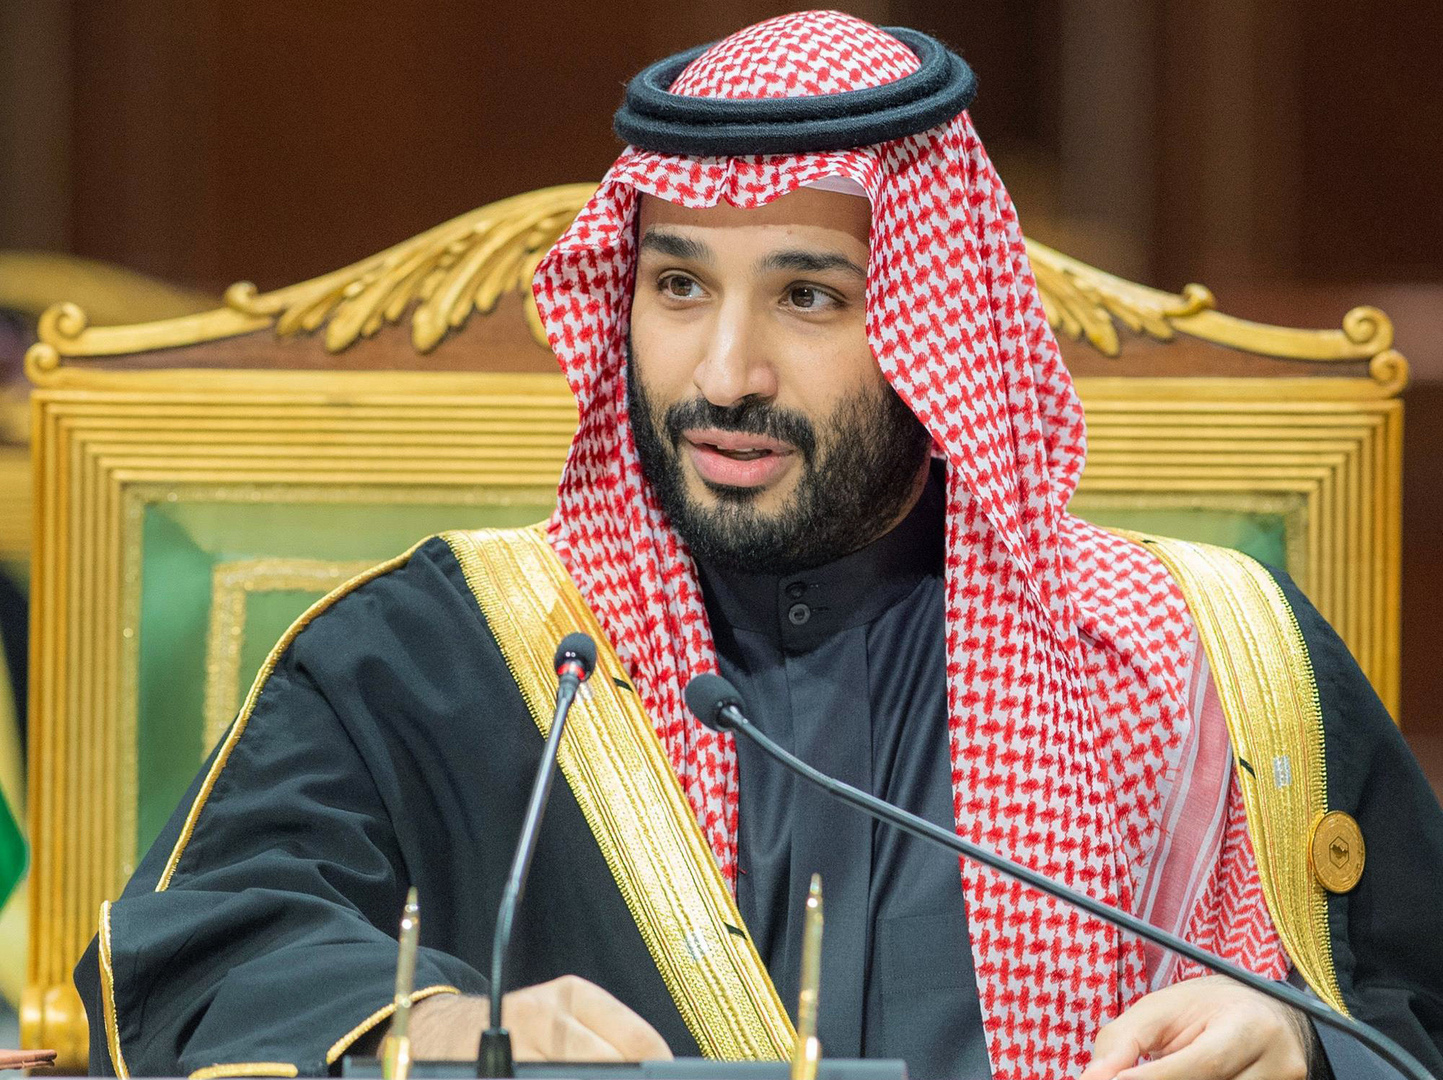 ولي العهد السعودي يطلق 4 مناطق اقتصادية خاصة تشمل حوافز أبرزها الملكية  الأجنبية بنسبة 100% - RT Arabic